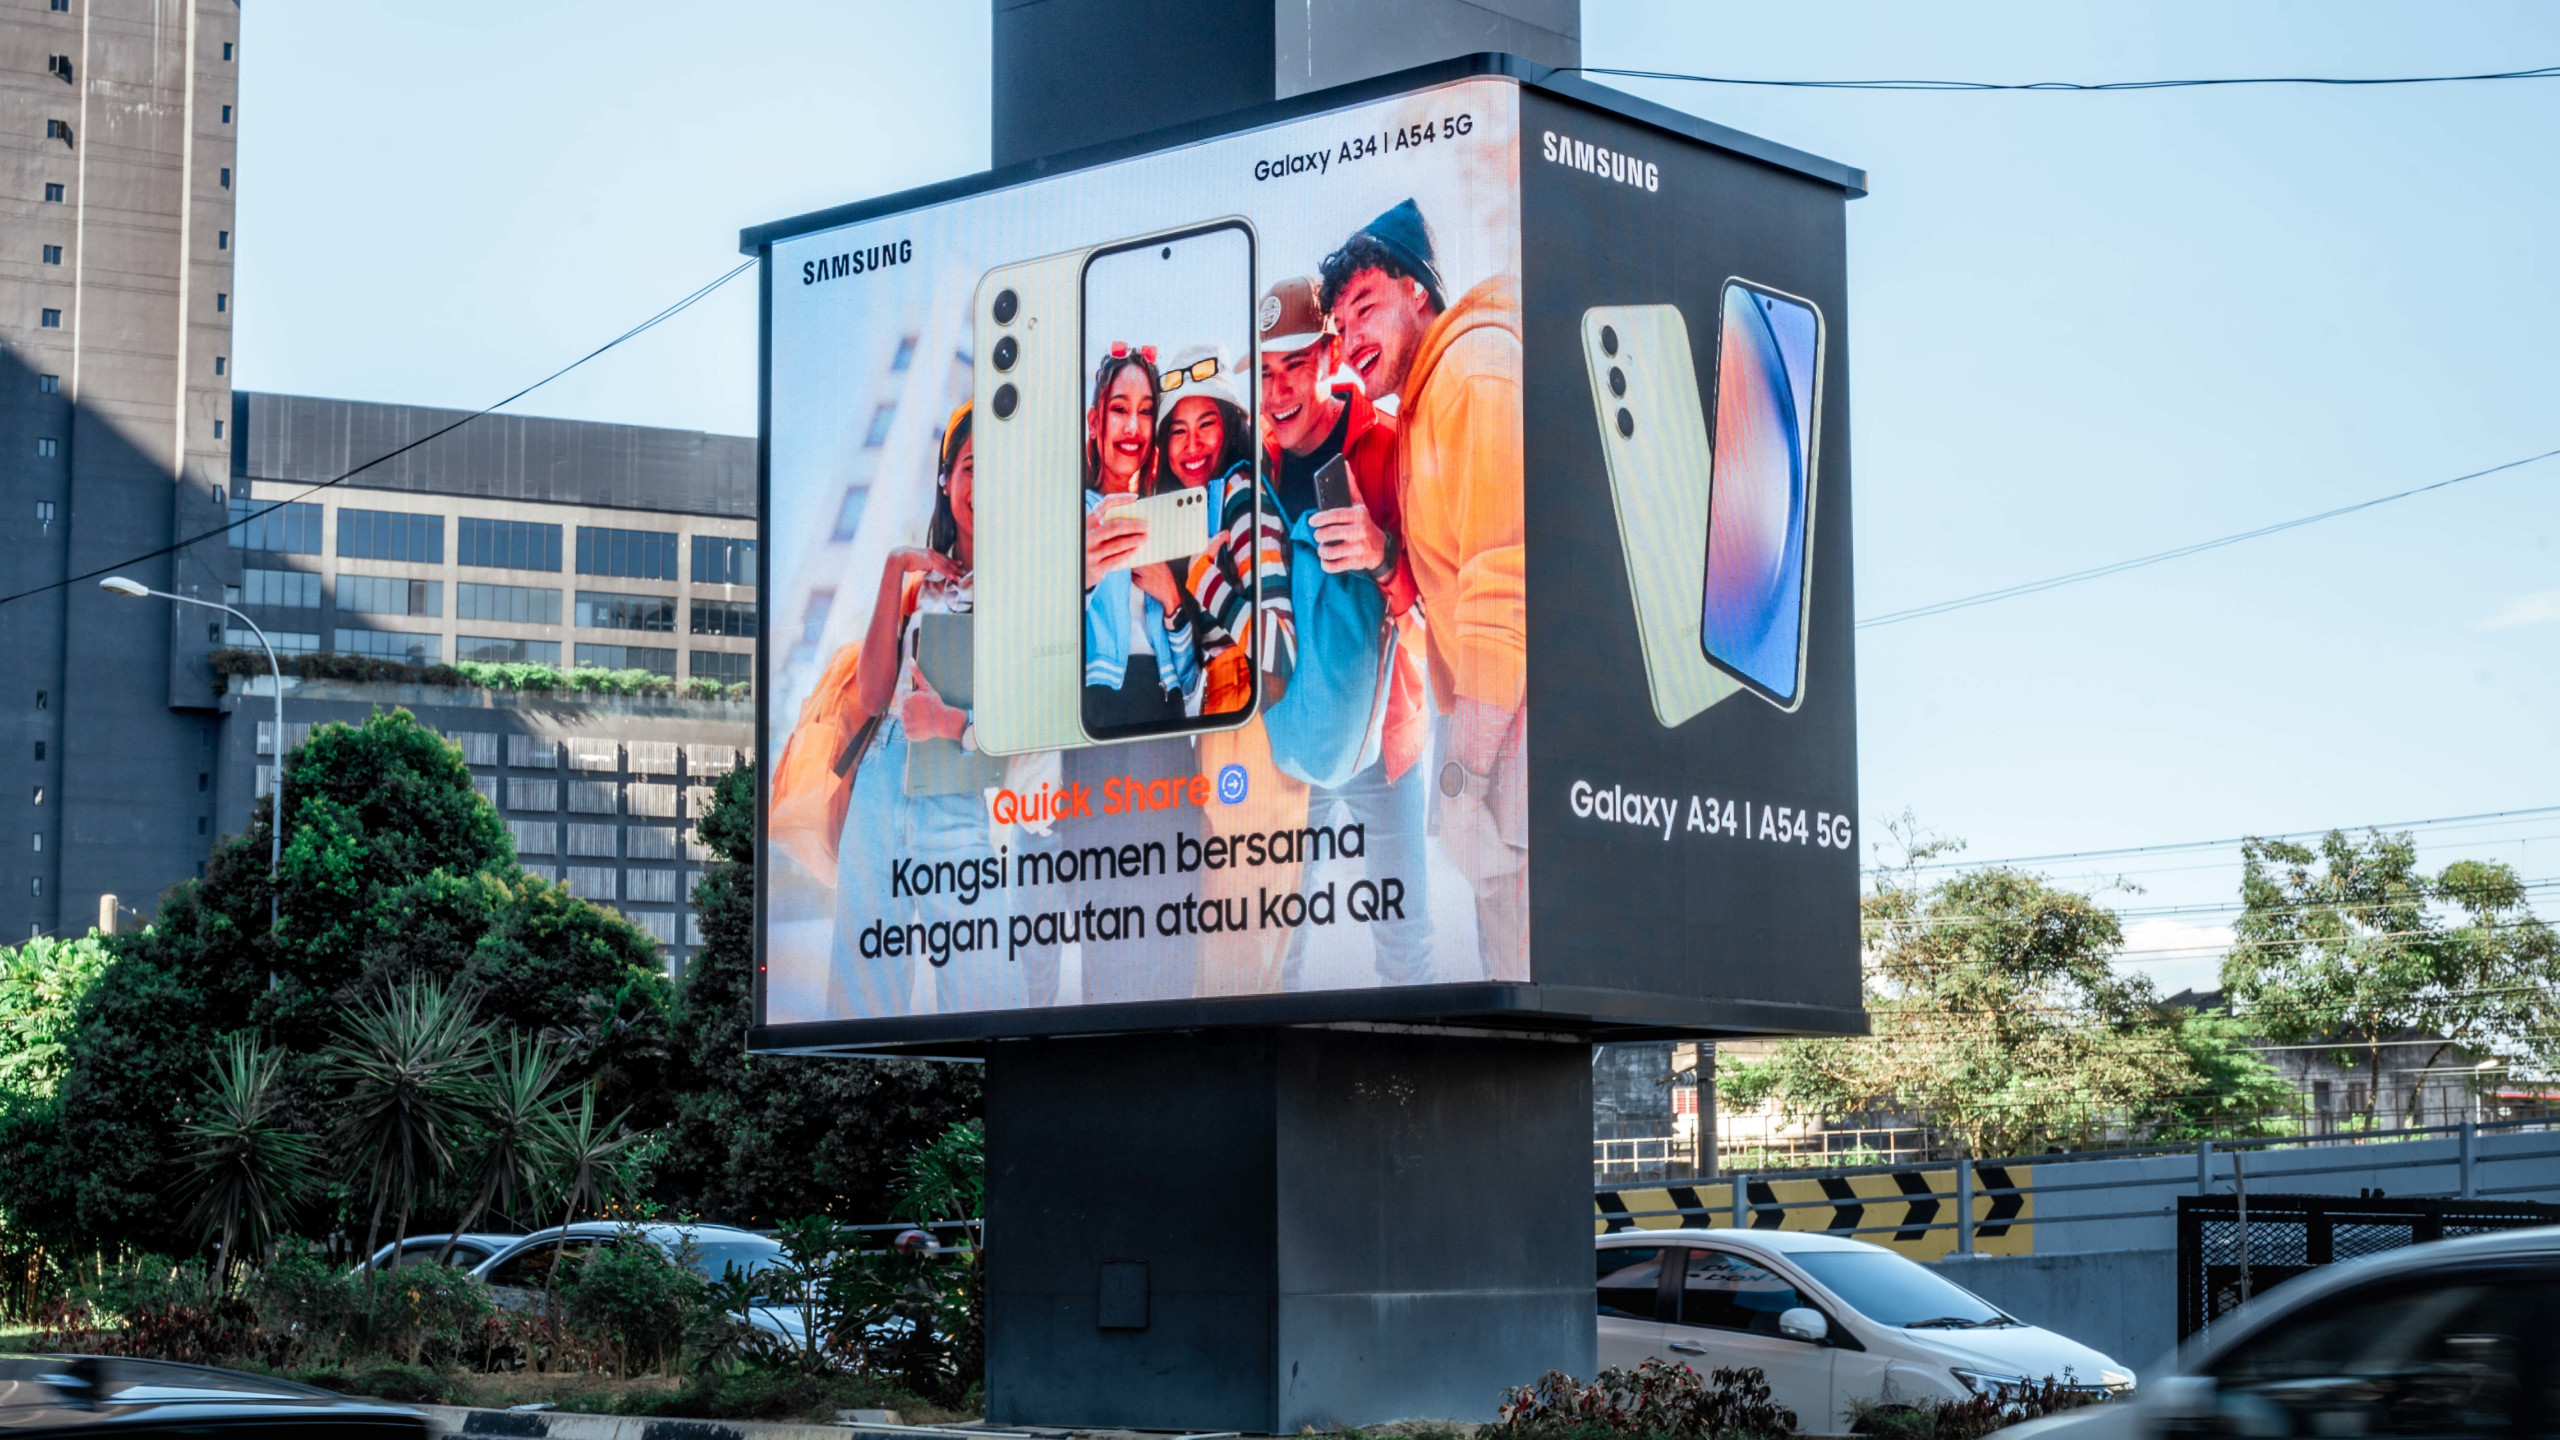 세계적인 기업, 말레이시아 전역에서 ‘데이파팅' 활용하여 임팩트 있는 디지털 옥외광고 캠페인 진행 